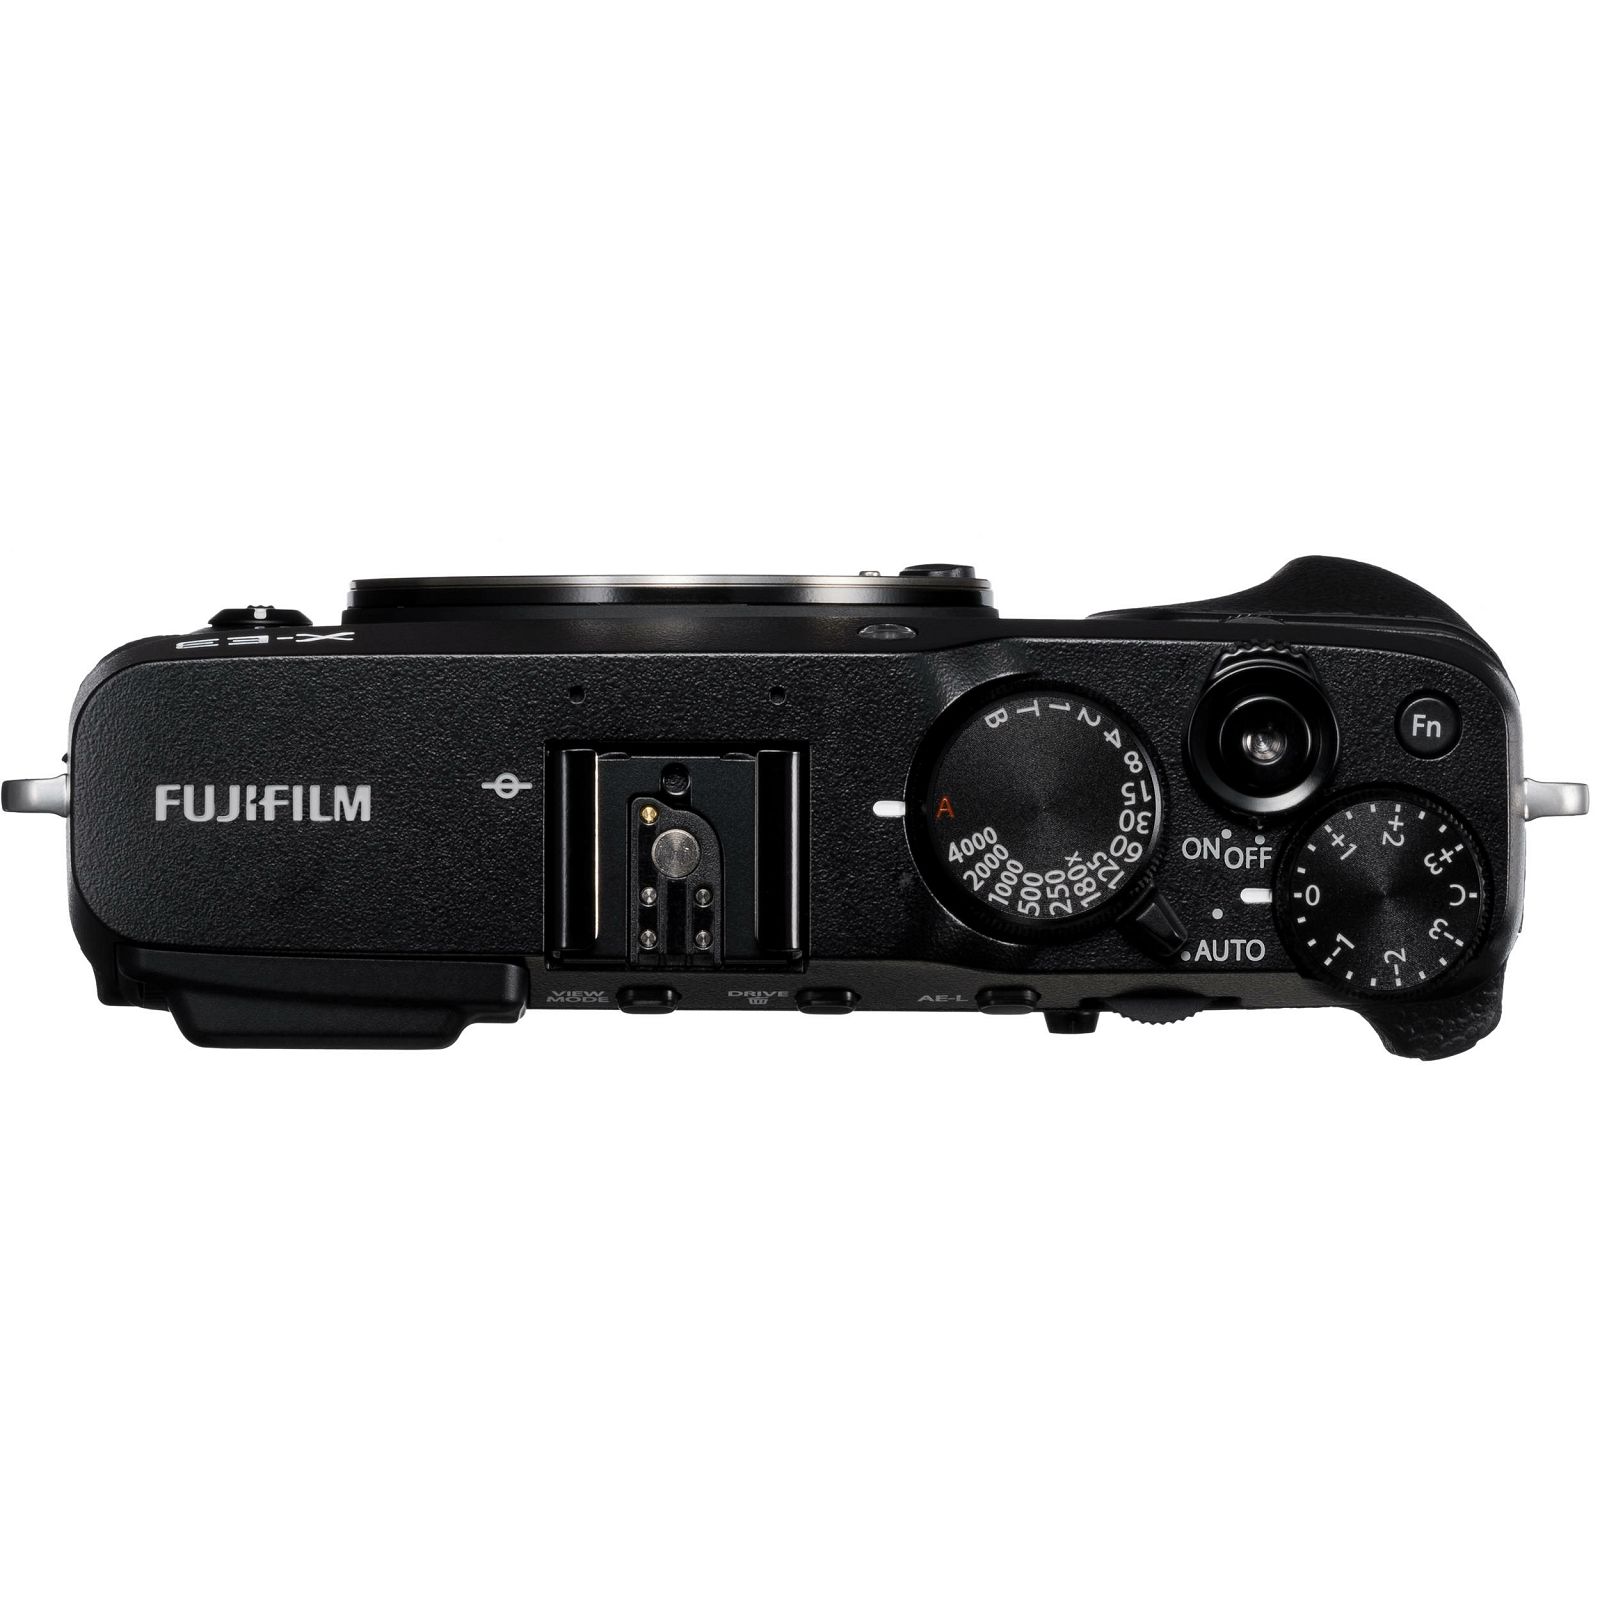 Fujifilm X-E3 + XF 23mm f/2 WR EE KIT Black crni Digitalni fotoaparat s objektivom XF23mm F2 Mirrorless camera Fuji Finepix XE3